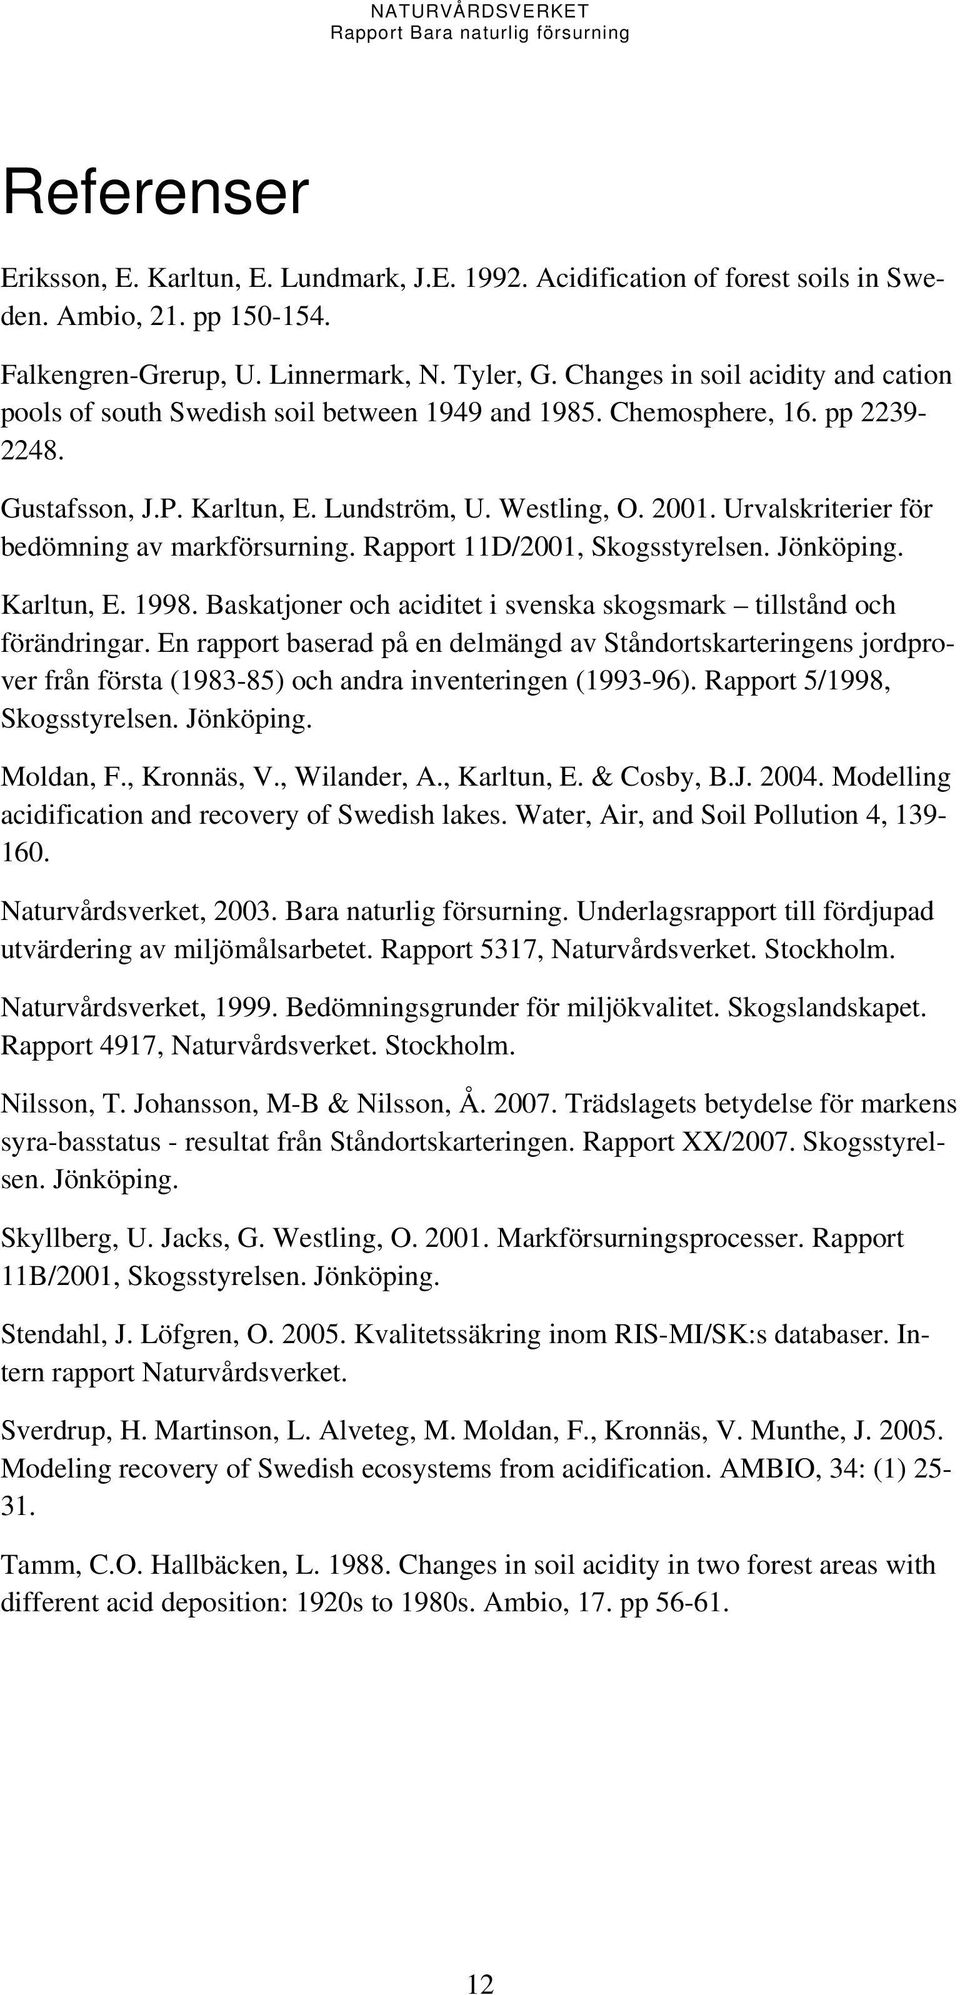 Urvalskriterier för bedömning av markförsurning. Rapport 11D/2001, Skogsstyrelsen. Jönköping. Karltun, E. 1998. Baskatjoner och aciditet i svenska skogsmark tillstånd och förändringar.